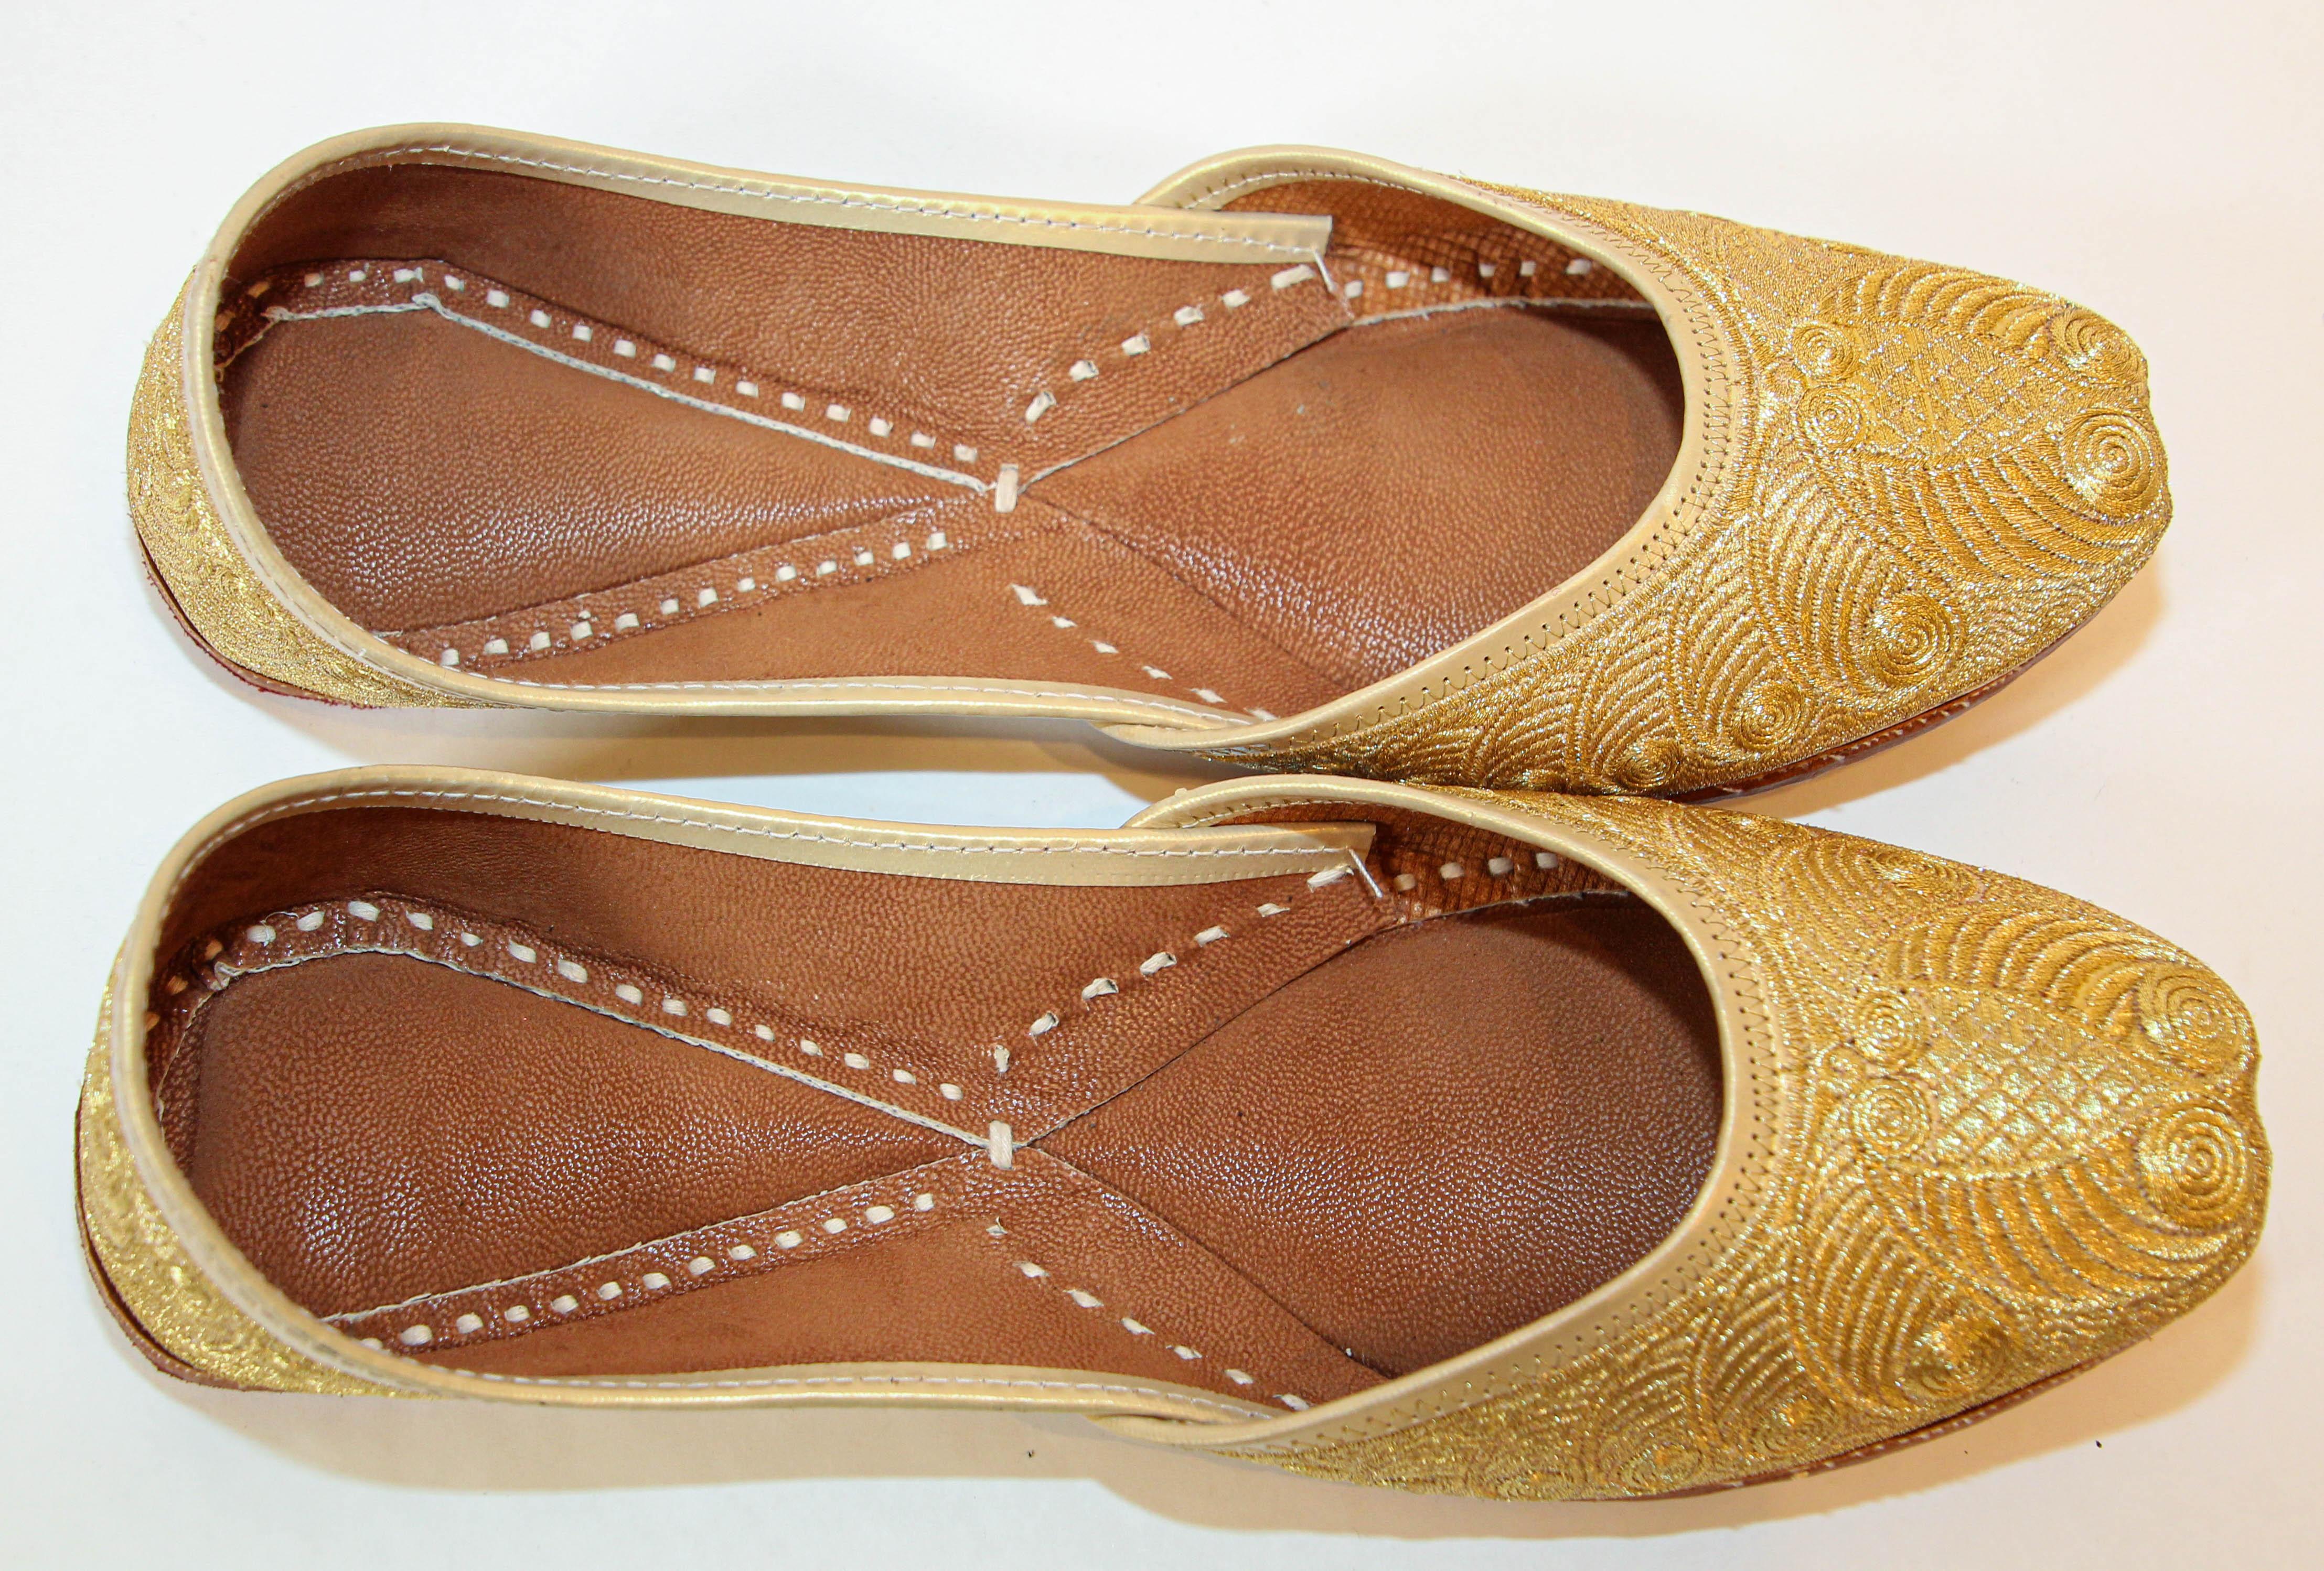 Vintage 1970 cuir doré indien Punjabi jutti chaussures de mariage.
Vintage chaussures en cuir cousu et tooled à la main avec broderie à la main avec des fils métalliques dorés.
Incroyable style moghol brodé or traditionnel islamique indien